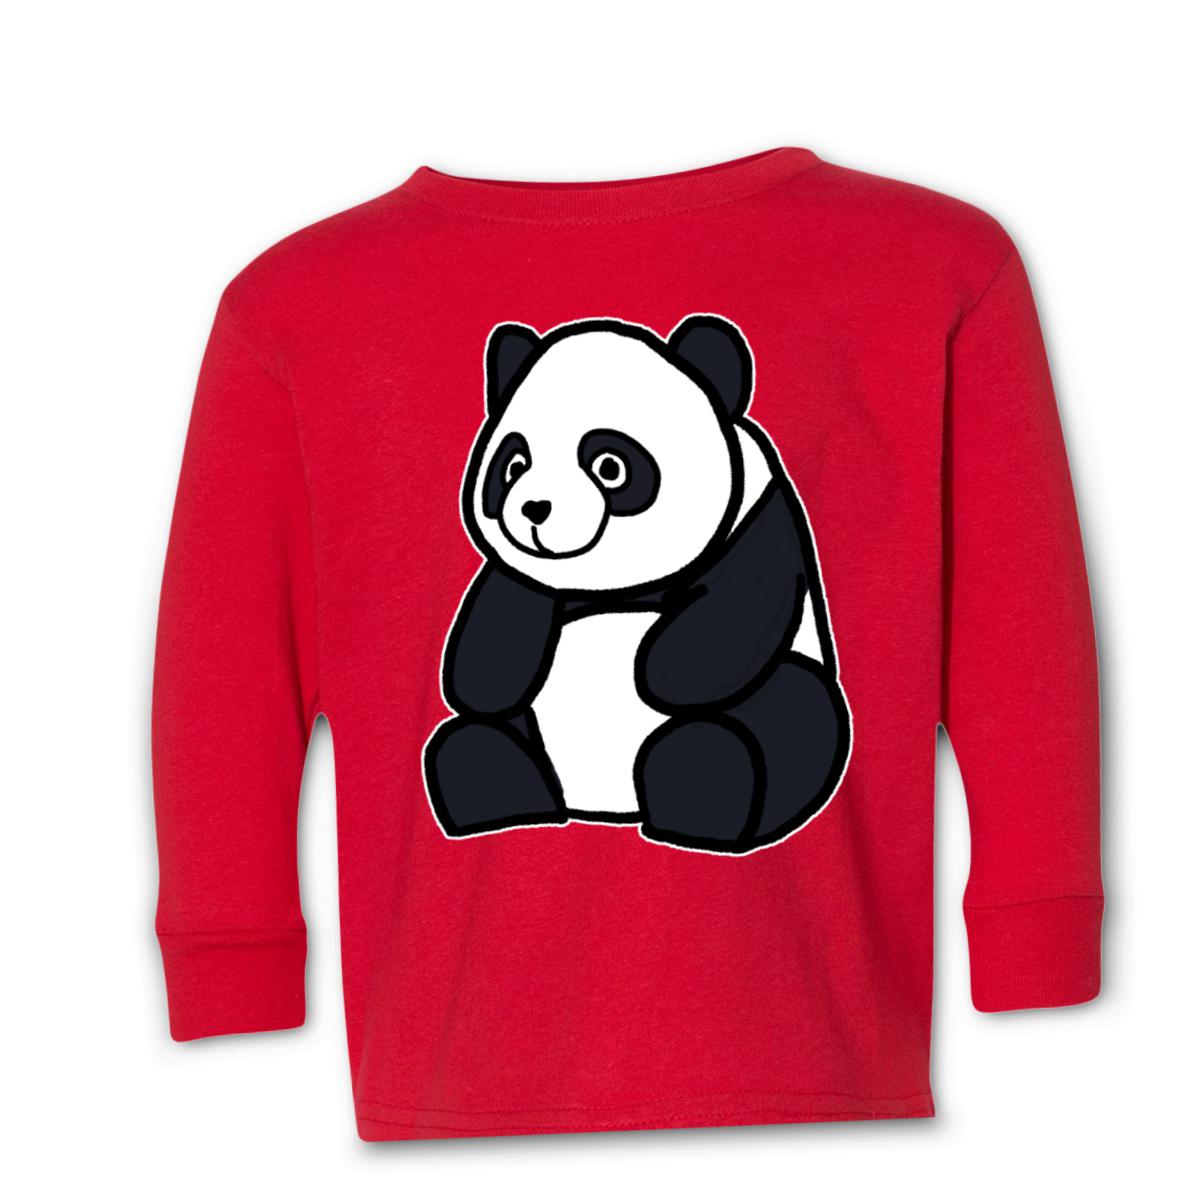 Panda Toddler Long Sleeve Tee 2T red